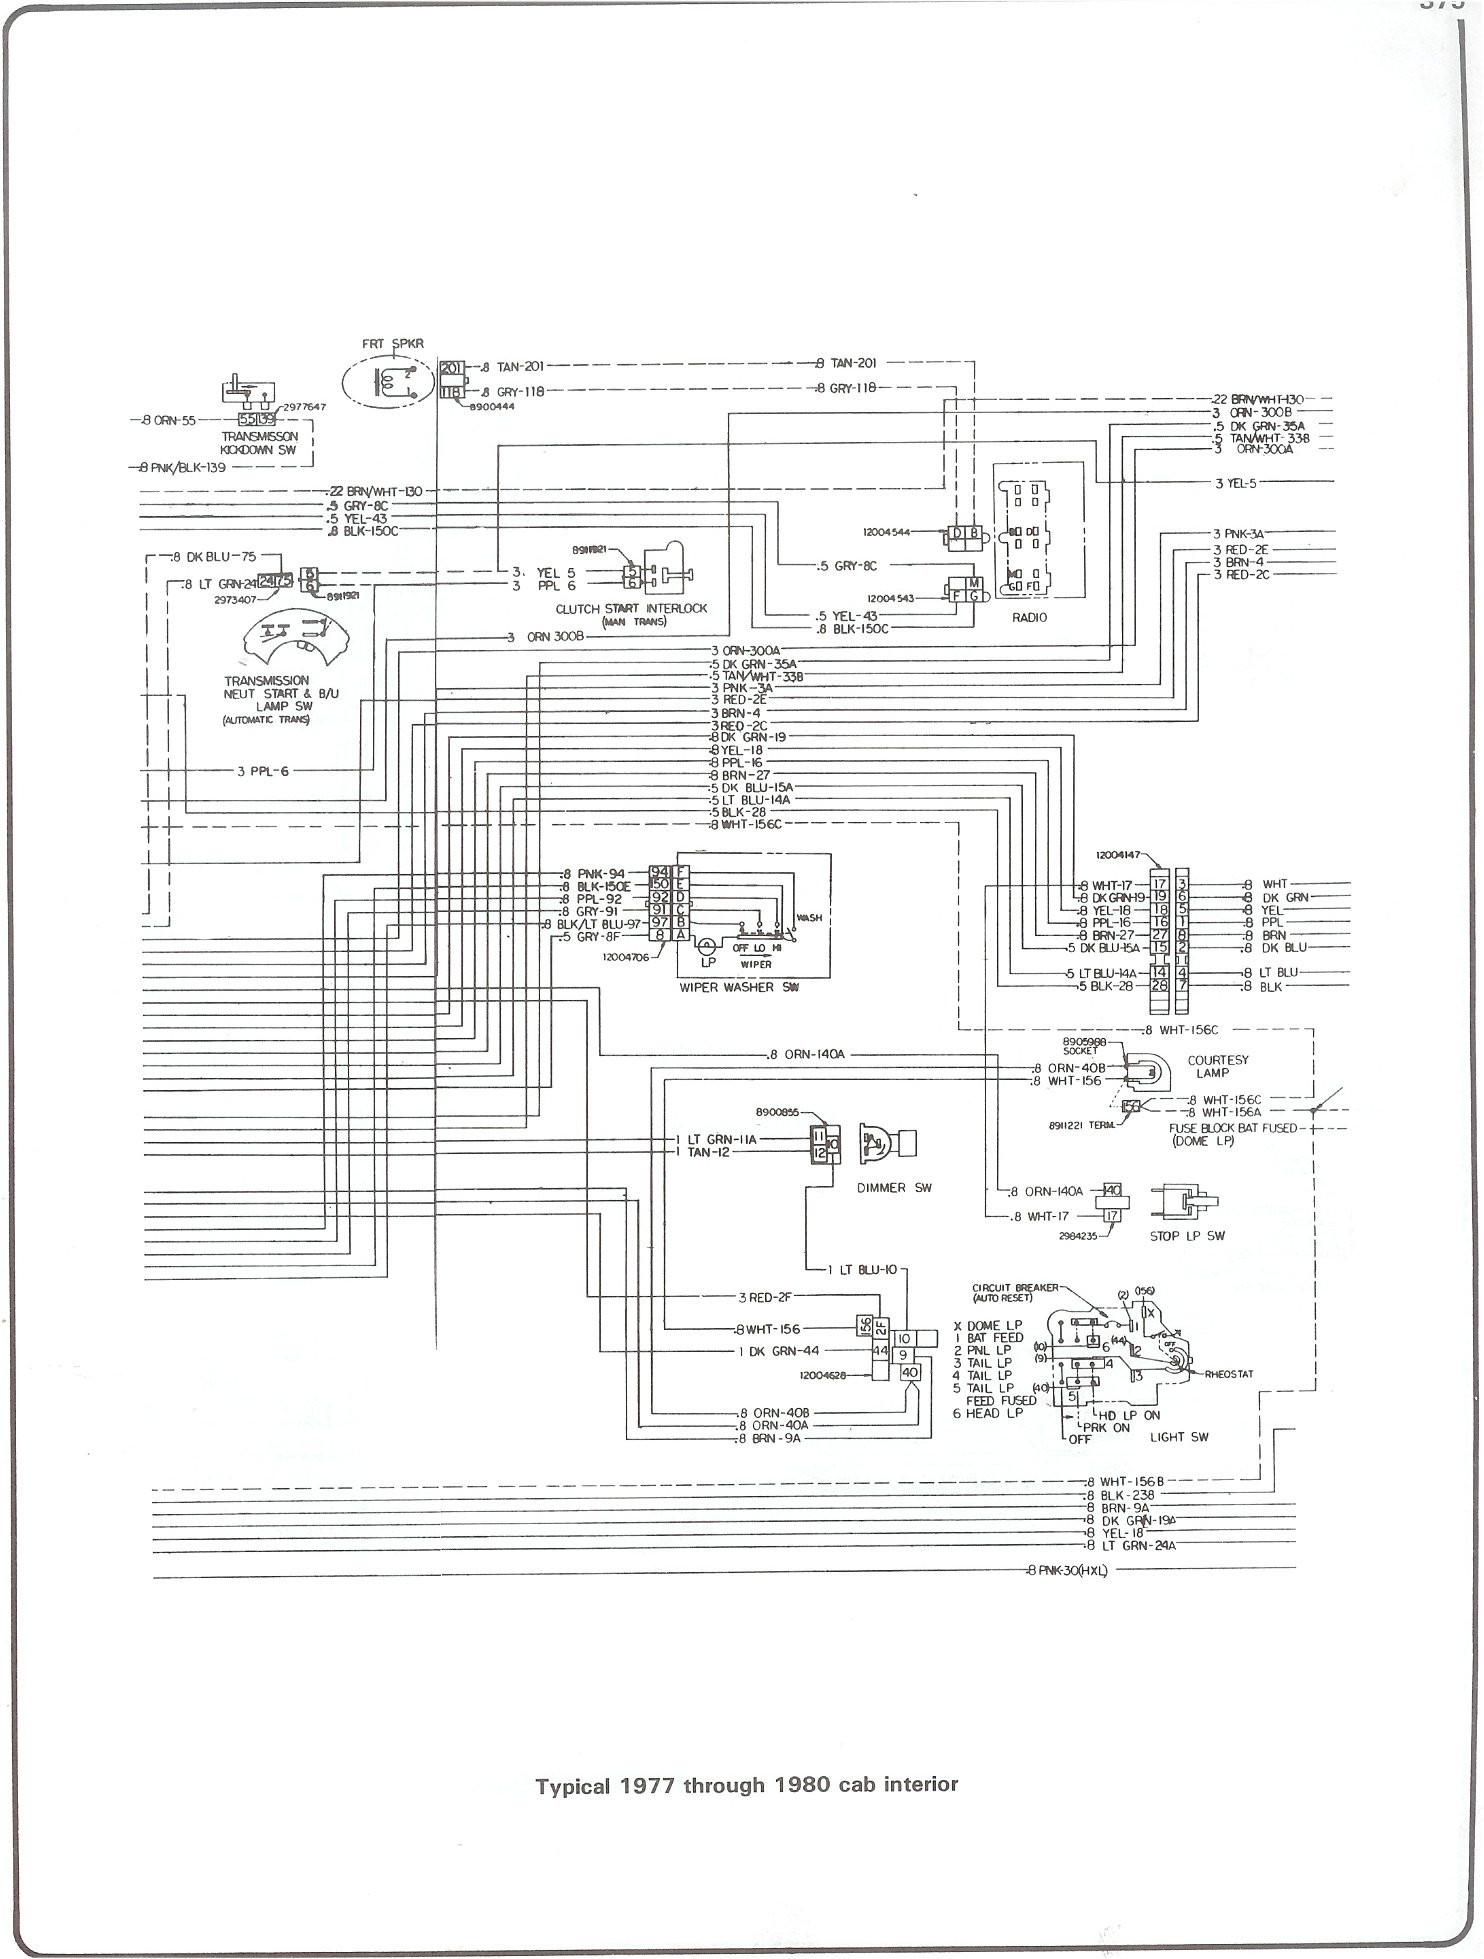 84 Chevy Silverado K20 solenoid Wiring Diagram Schematic 87 F250 Wiring Diagram Free Picture Schematic 93 Civic Si Of 84 Chevy Silverado K20 solenoid Wiring Diagram Schematic